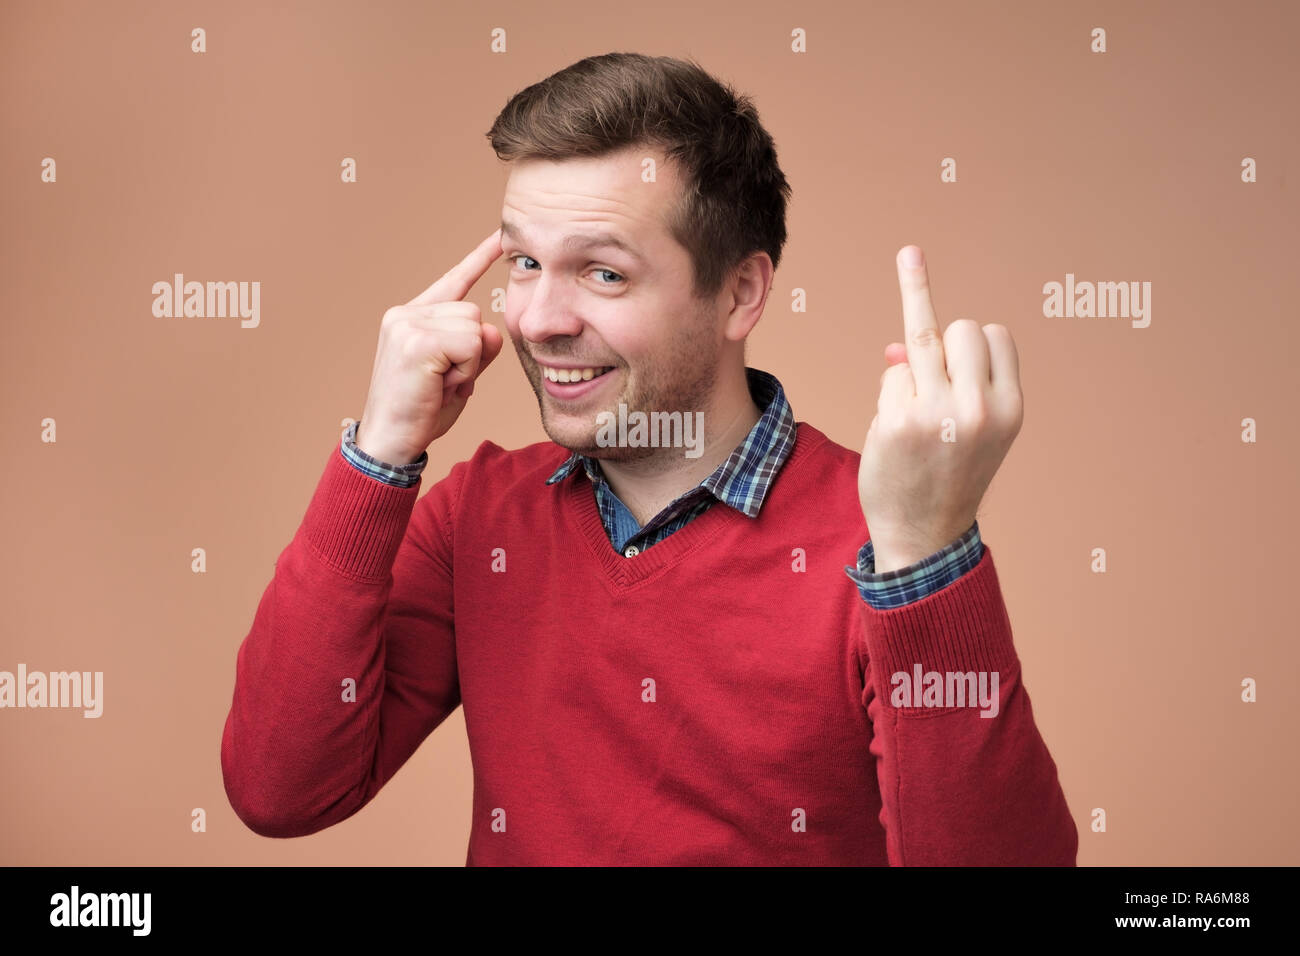 Portrait of smiling man in red sweater montrant son doigt sans bague de mariage Banque D'Images